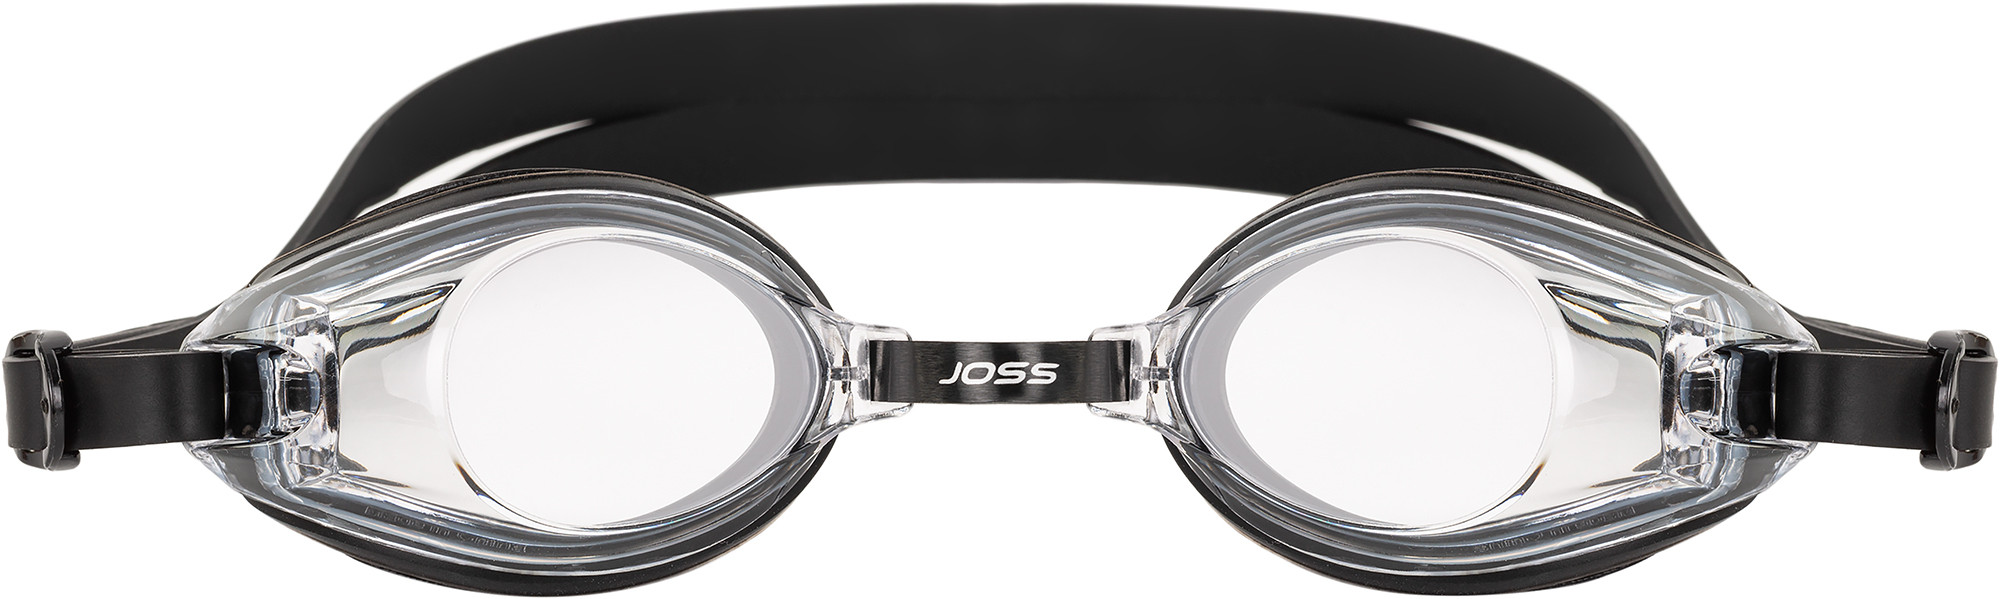 Окуляри для плавання Joss Core